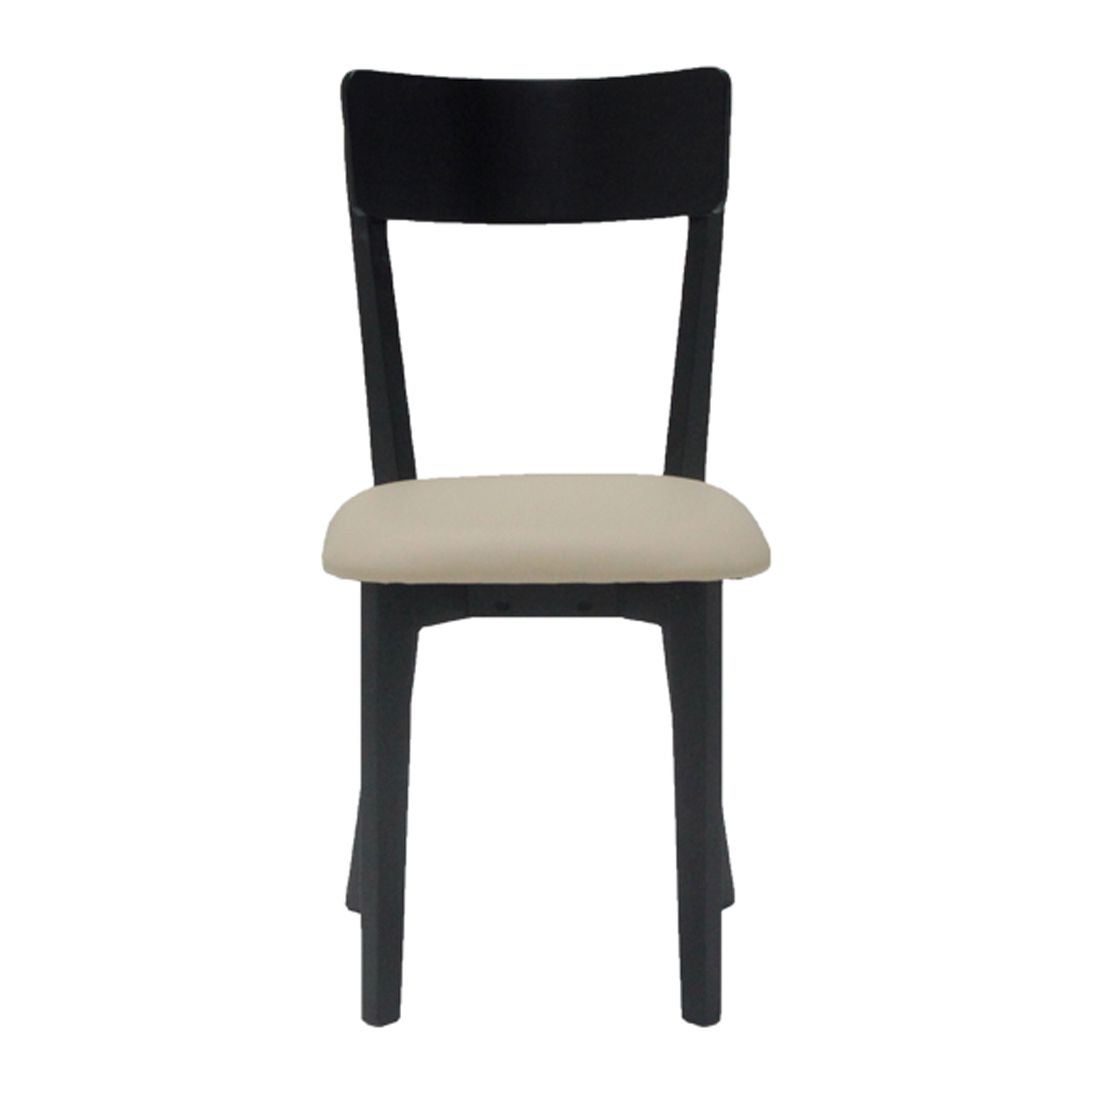 เก้าอี้ทานอาหาร เก้าอี้ไม้เบาะหนัง รุ่น Tersely-SB Design Square